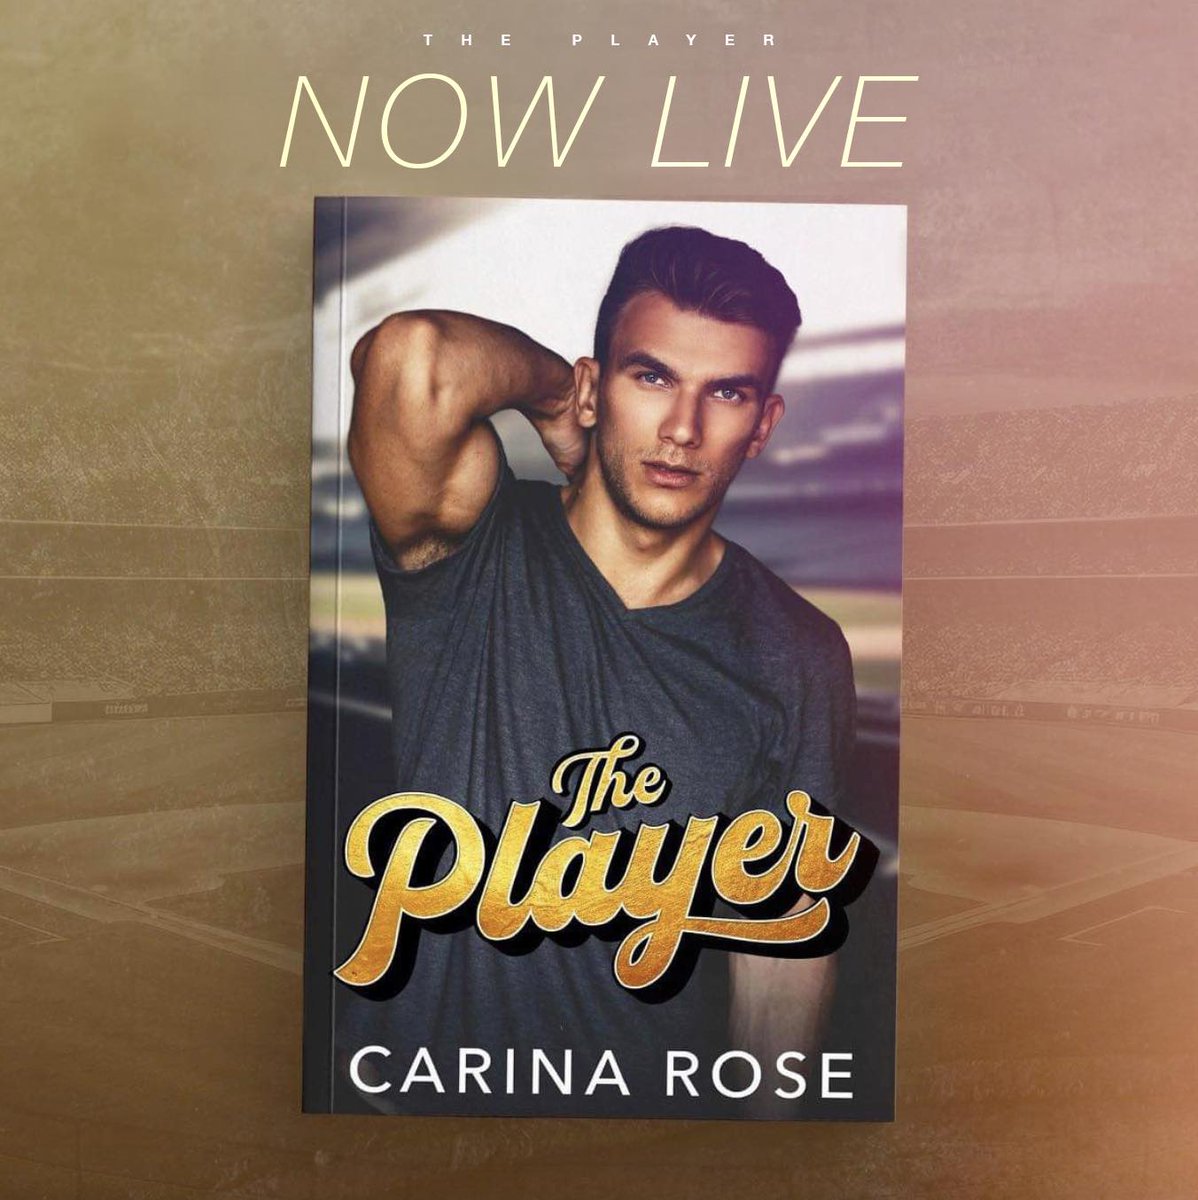 ⚾ ℍ𝕆𝕋 ℕ𝔼𝕎 ℝ𝔼𝕃𝔼𝔸𝕊𝔼 ⚾
T𝐡e P𝐥a𝐲e𝐫 by Carina Rose is LIVE!
Don’t miss this all new steamy sports romance!

#Oneclick today!
➜ books2read.com/u/bp1DrJ